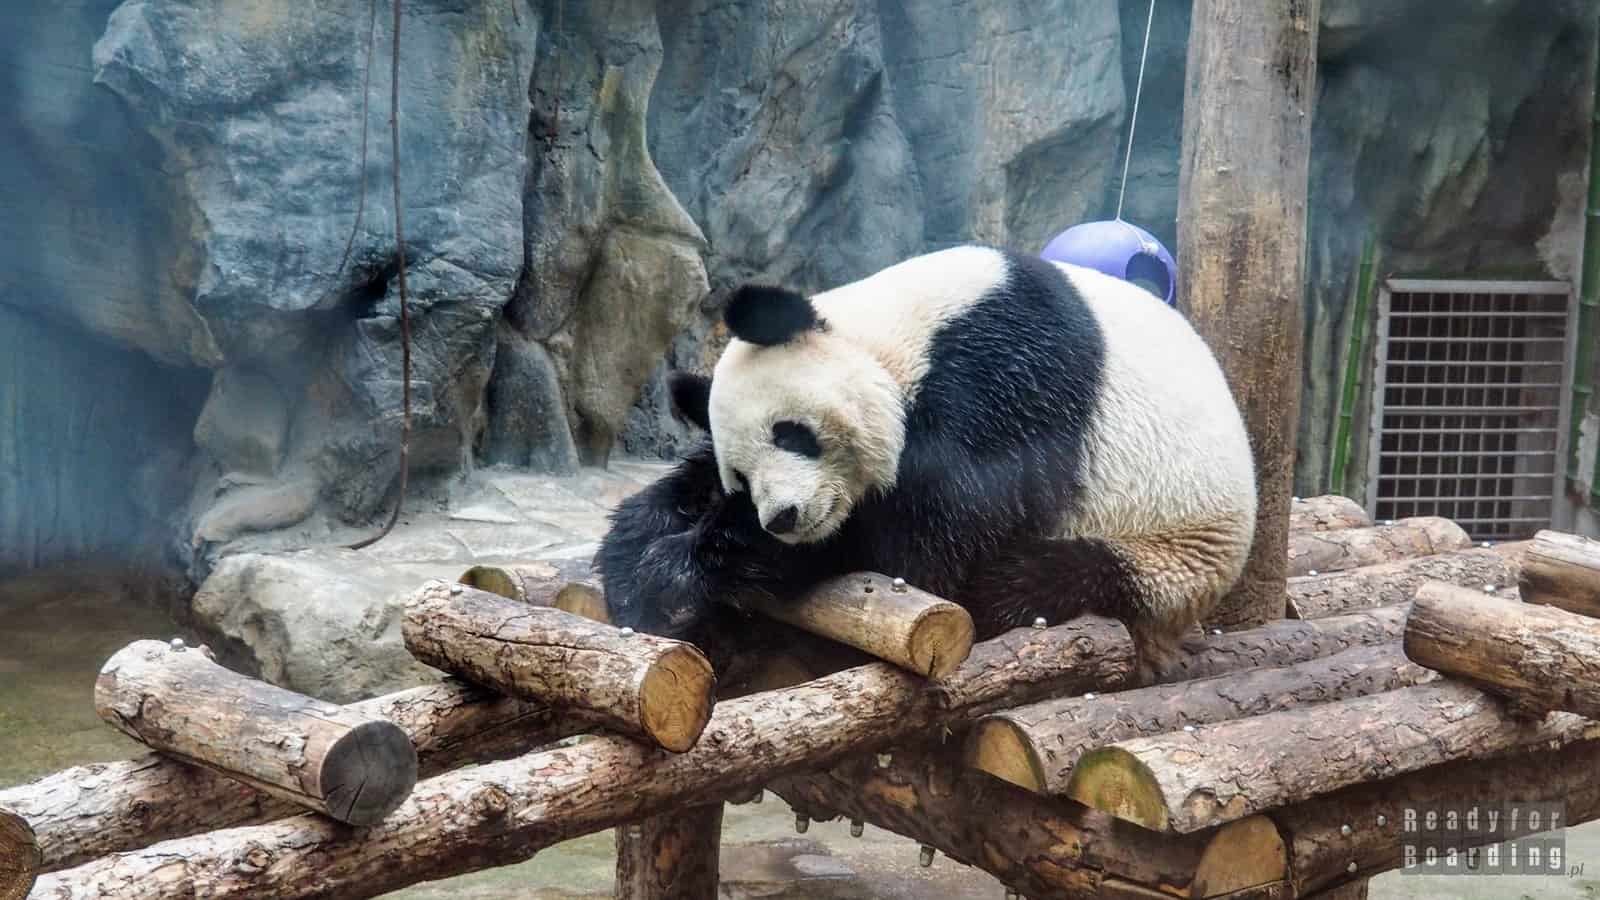 Panda at the Beijing Zoo, China